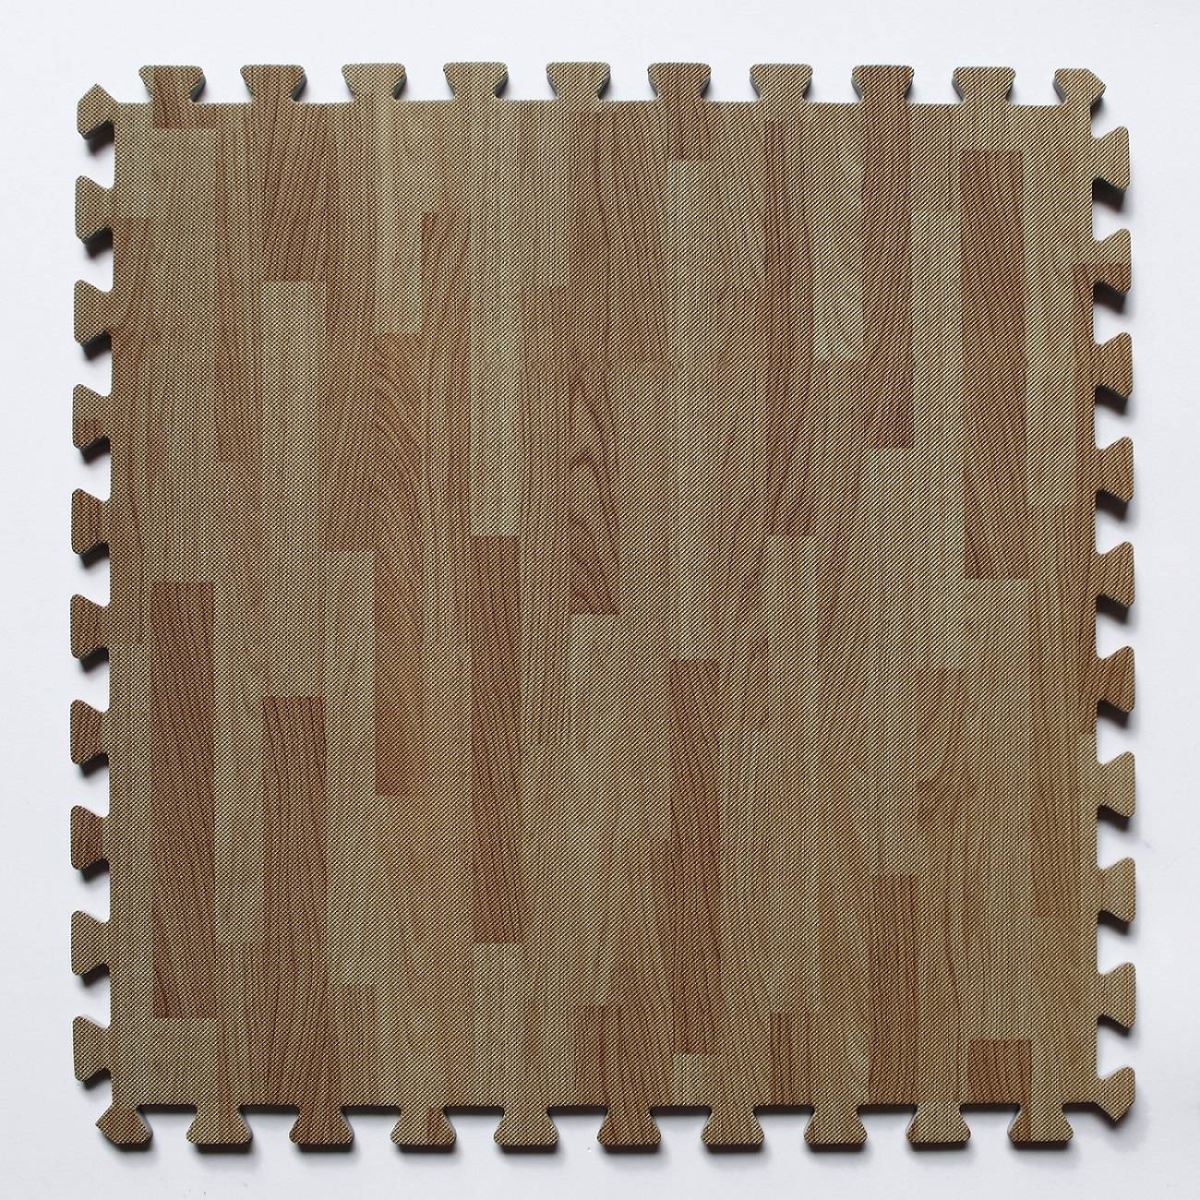 Mặt dưới của thảm trải sàn vân gỗ xốp có các đường rãnh hoặc đường vân nhỏ để tăng độ bám cho mặt sàn và chống trơn trượt